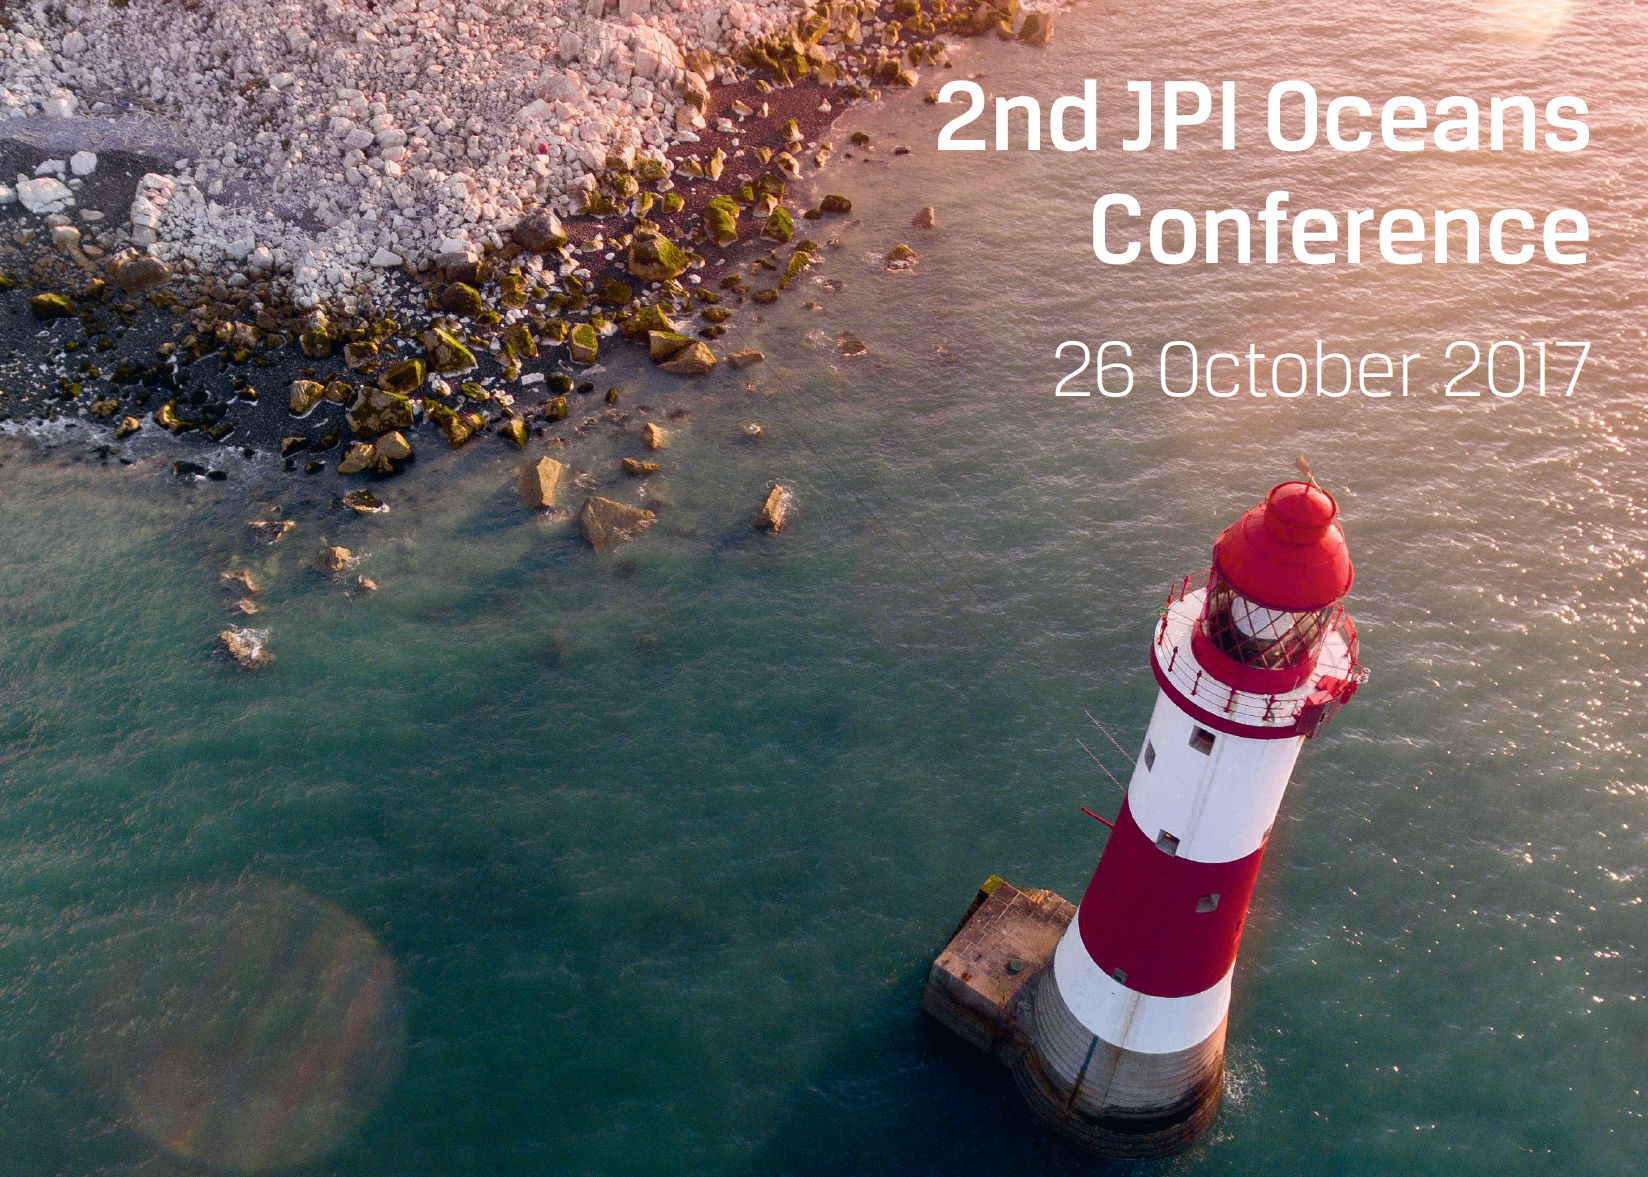 @ 2nd JPI Oceans Conference 26 October 2017